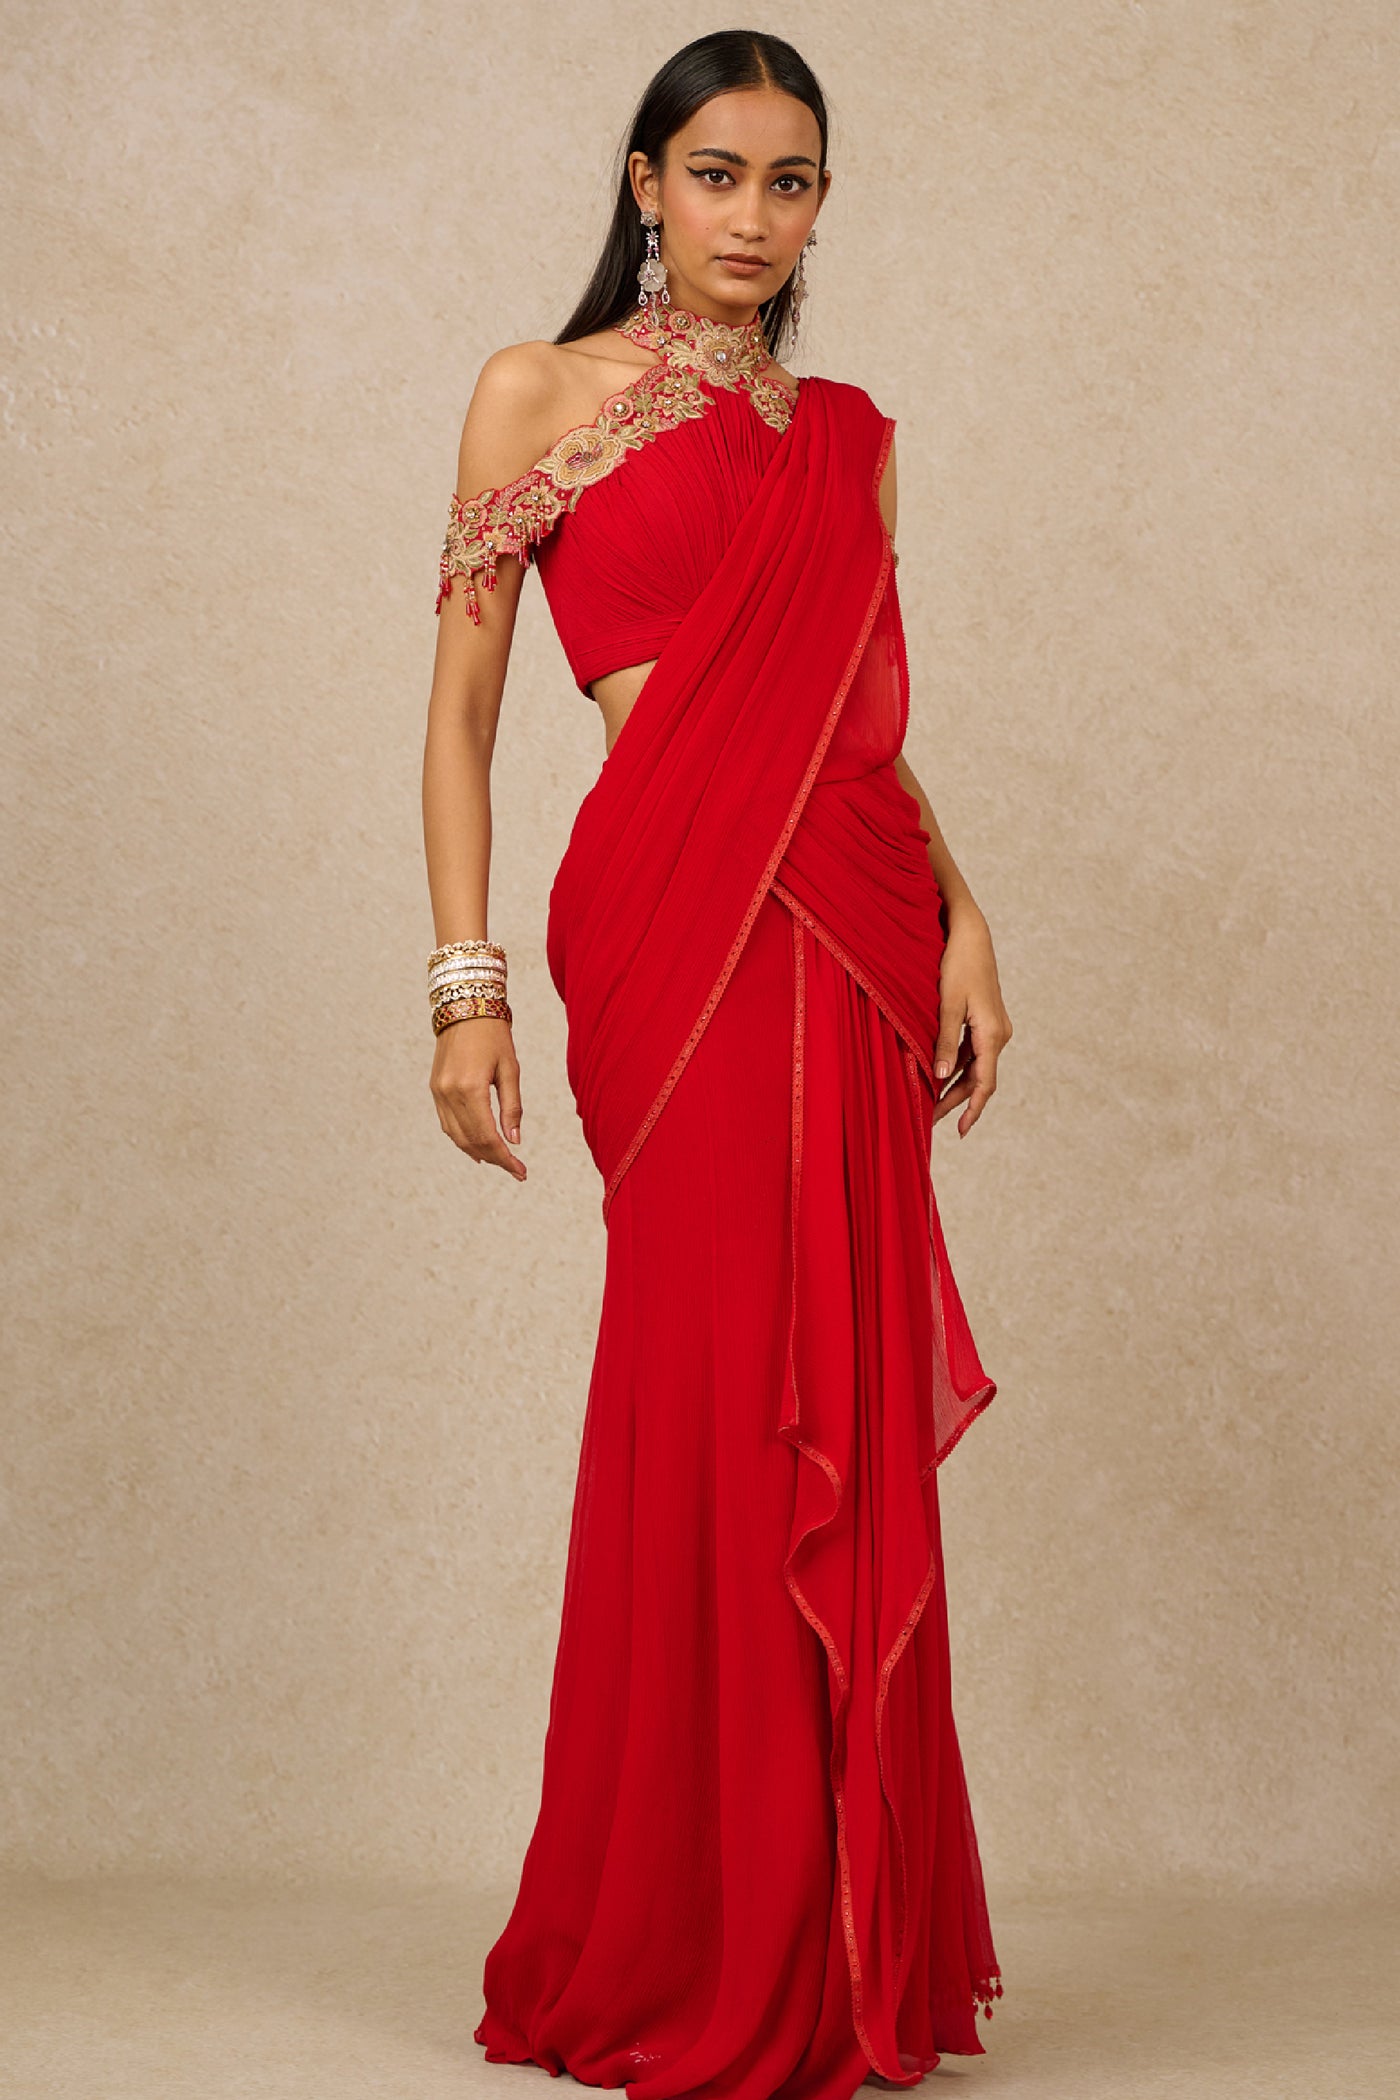 Tarun Tahiliani Concept Saree Blouse Red Indian designer wear online shopping melange singapore